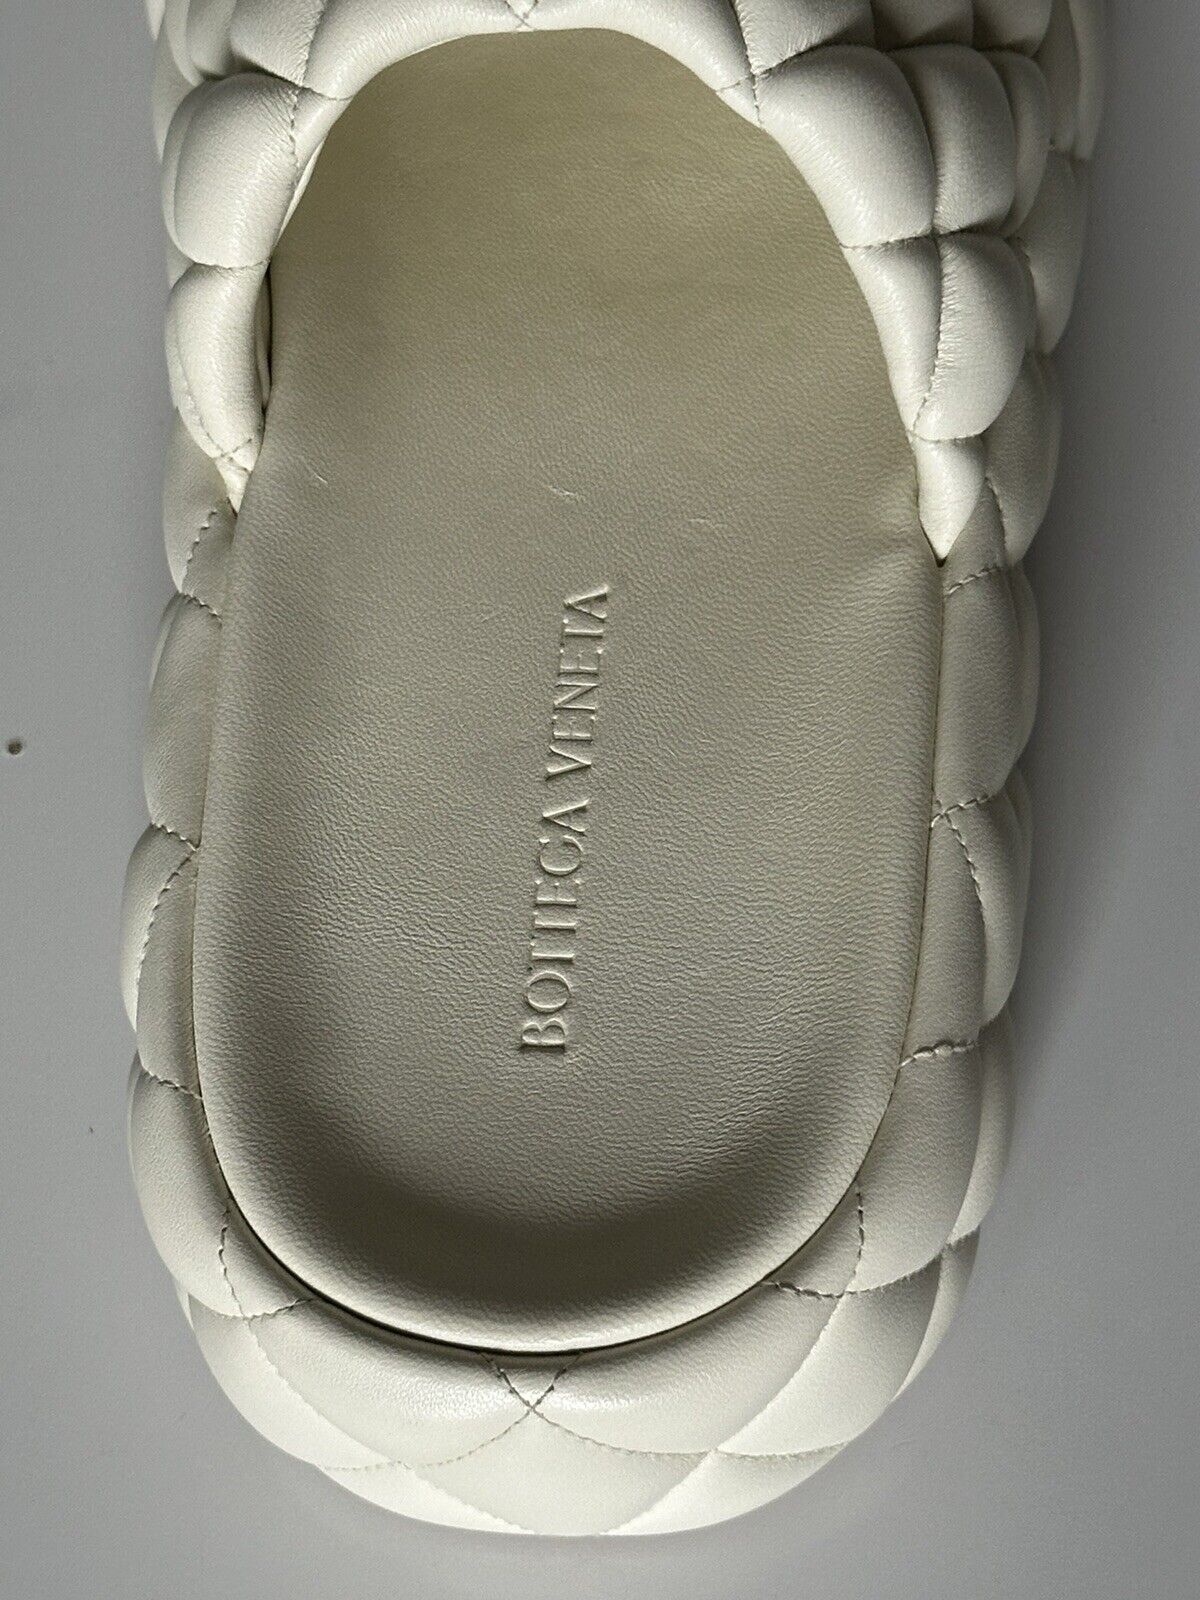 NIB Белые кожаные стеганые сандалии Bottega Veneta 1450 долларов США 9 США 708885 IT 